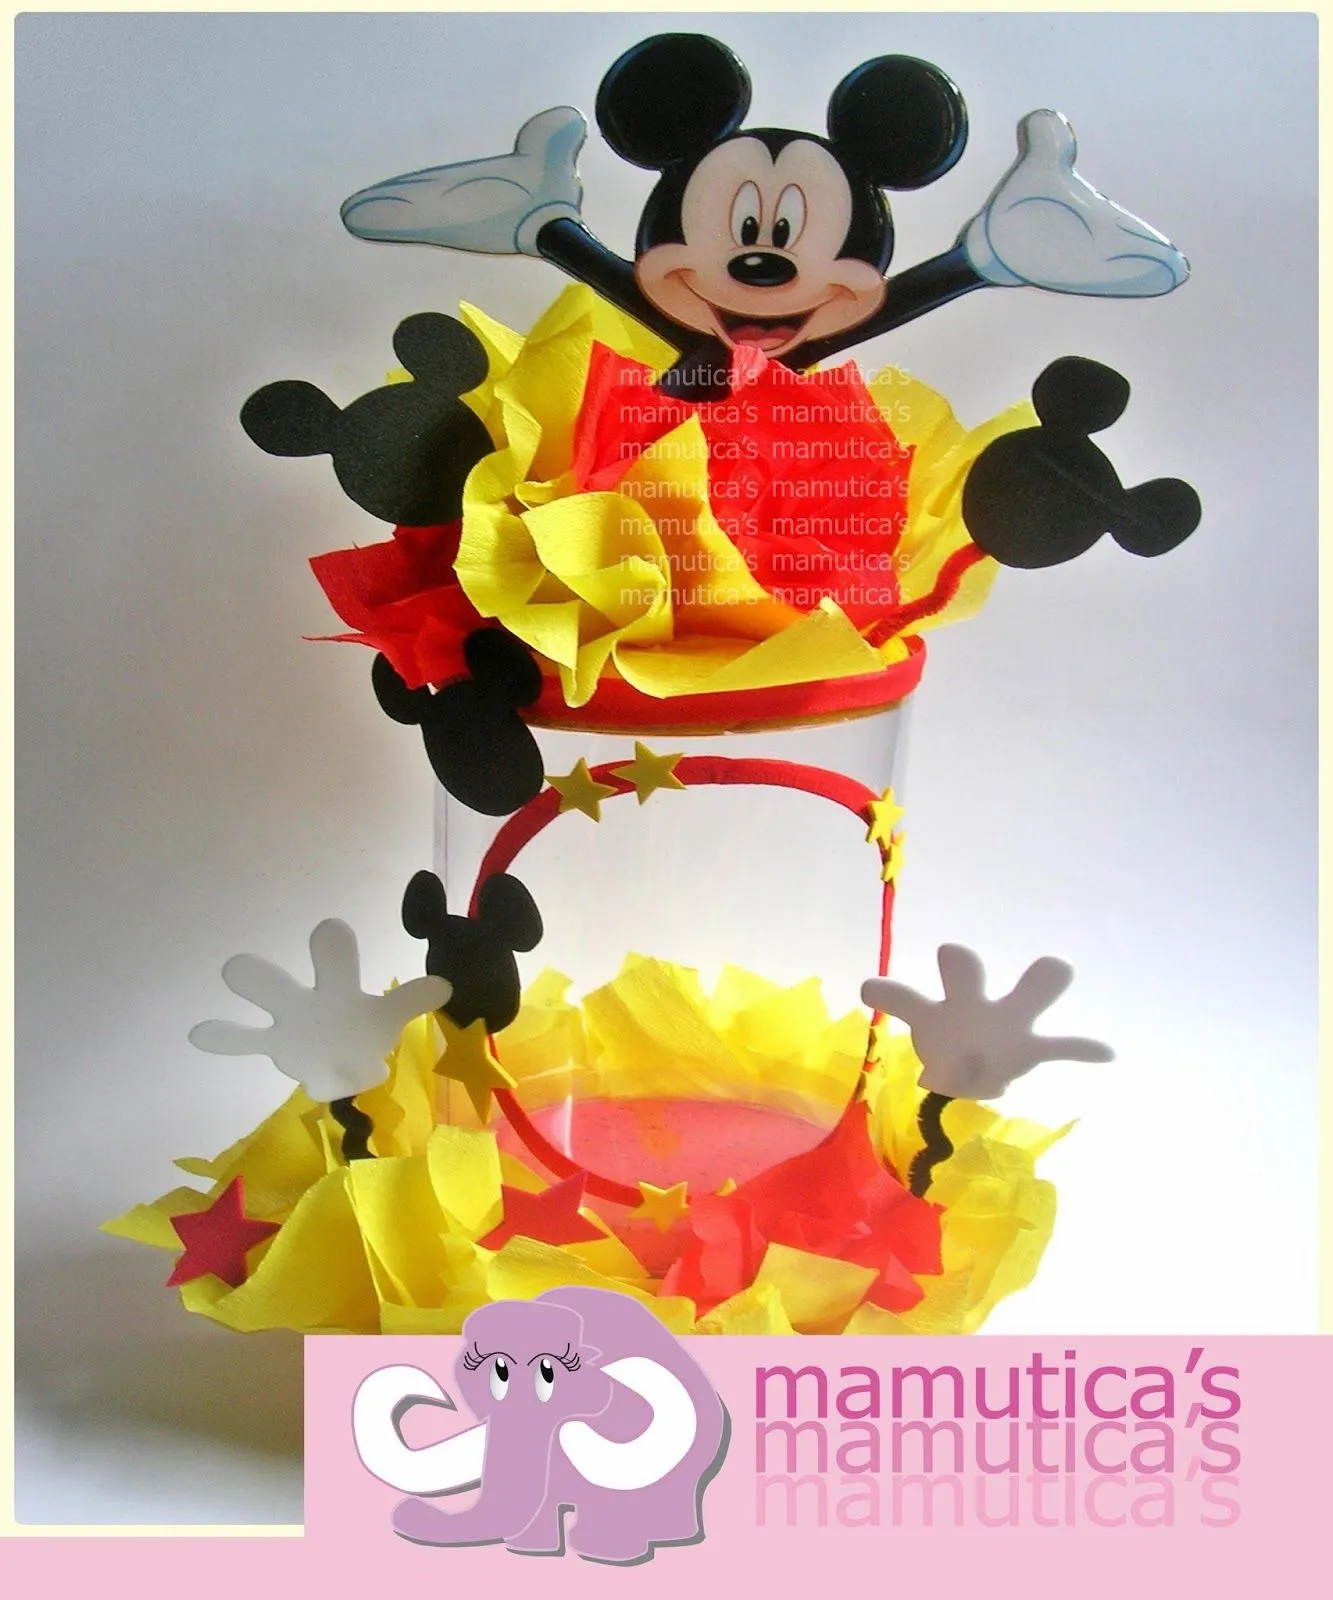 Mamutica's: Dispensadores de chucherías .... Mickey Mouse